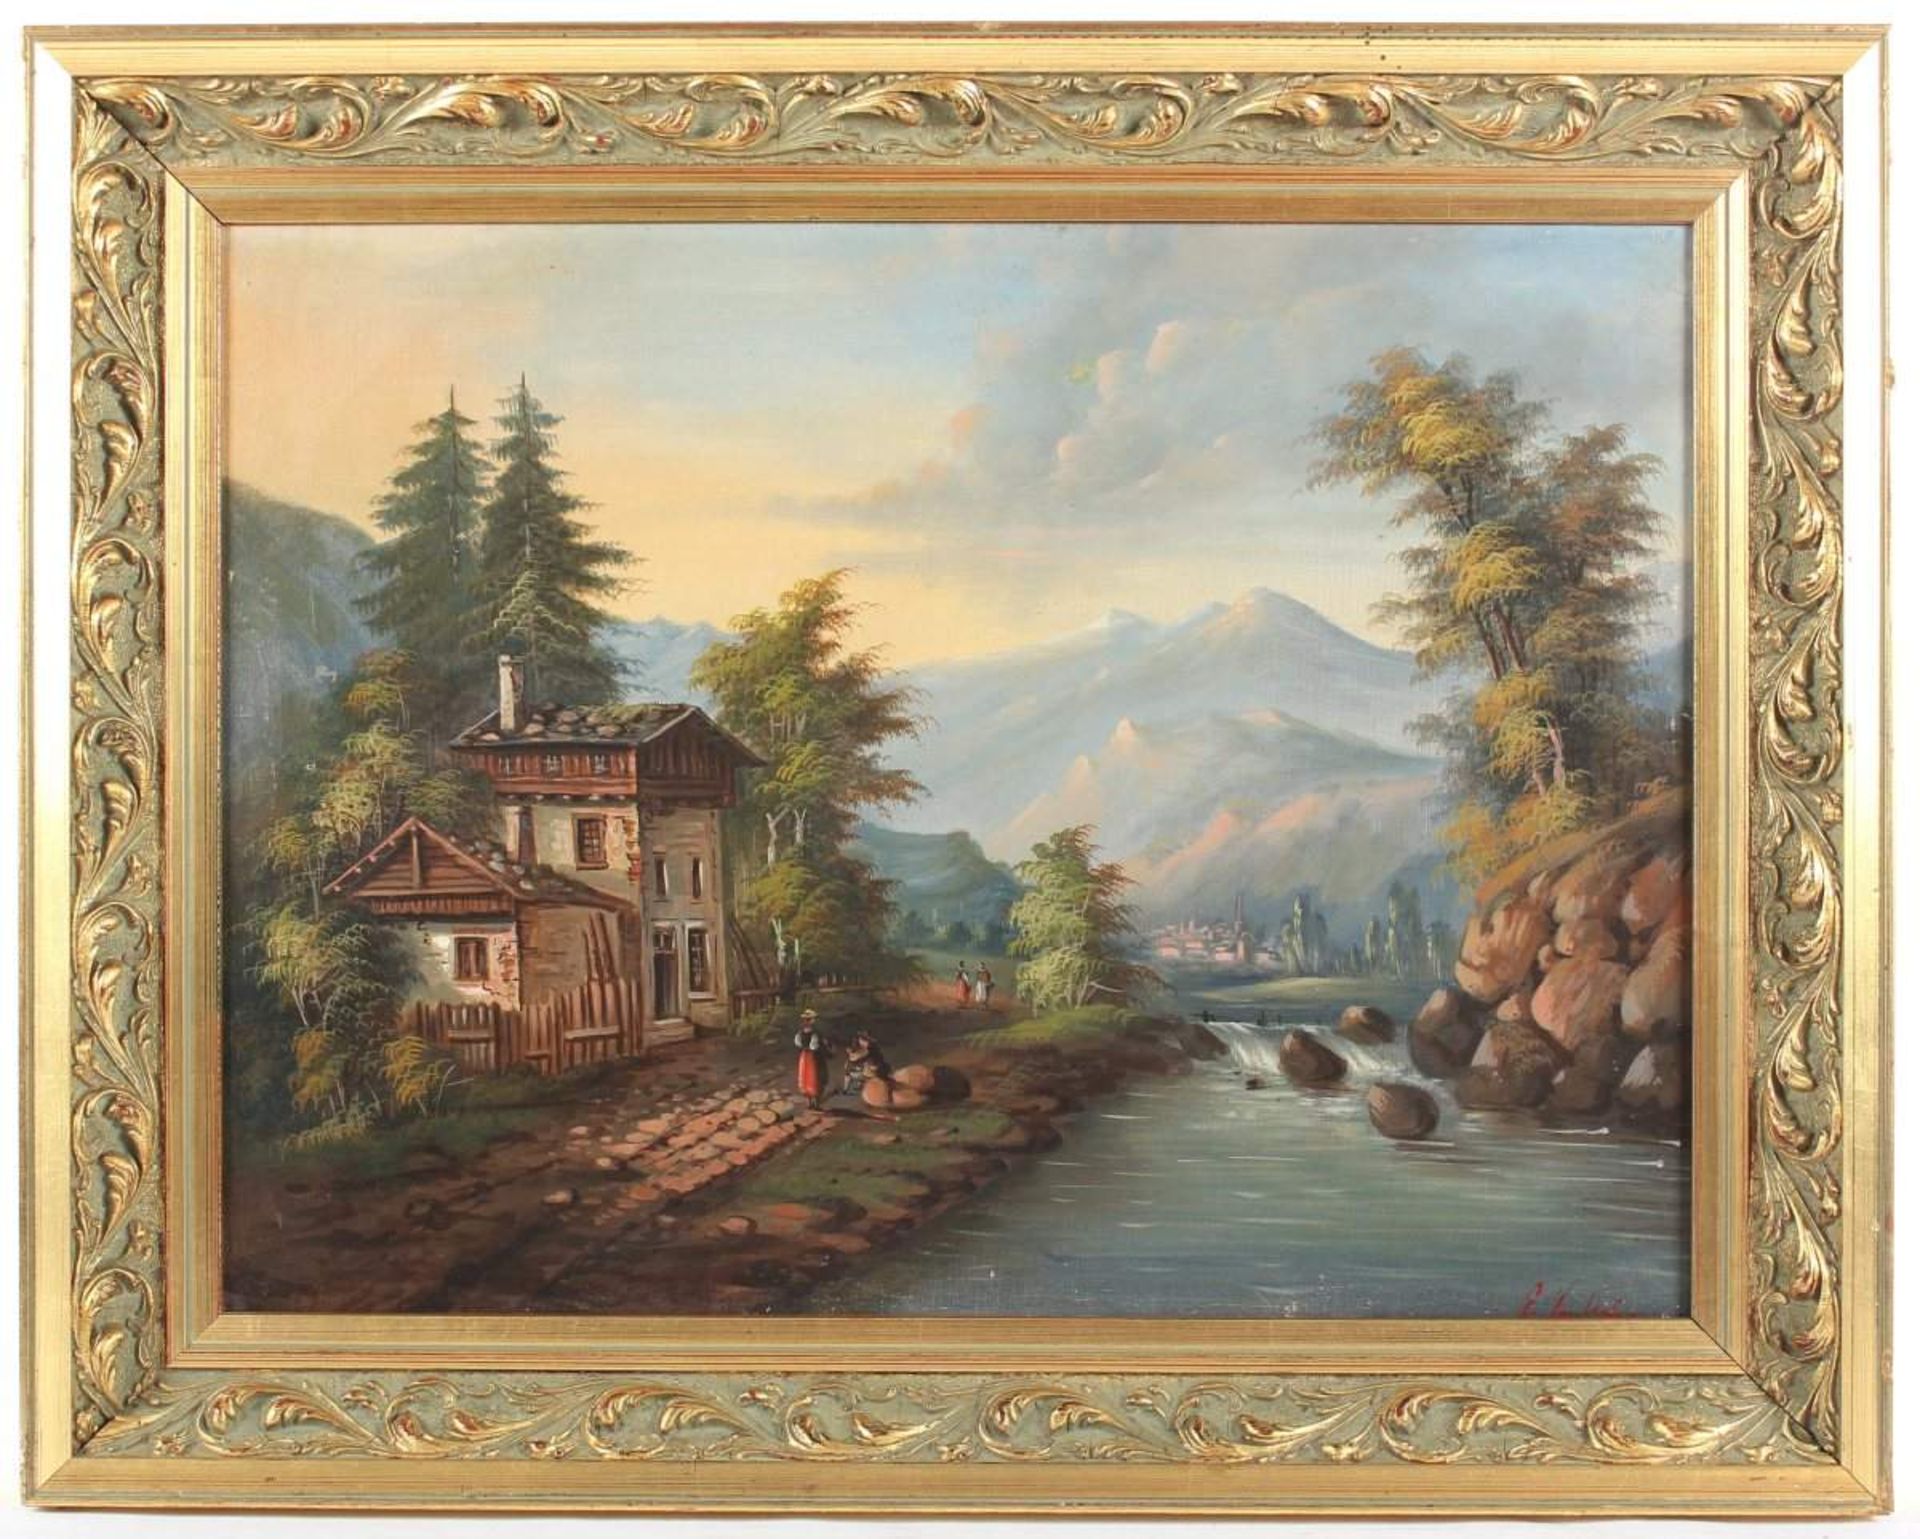 SEMBACH, E. (Maler um 1900), "Gebirgslandschaft", Öl/Lwd., 49 x 65,5, unten rechts signiert, - Image 2 of 3